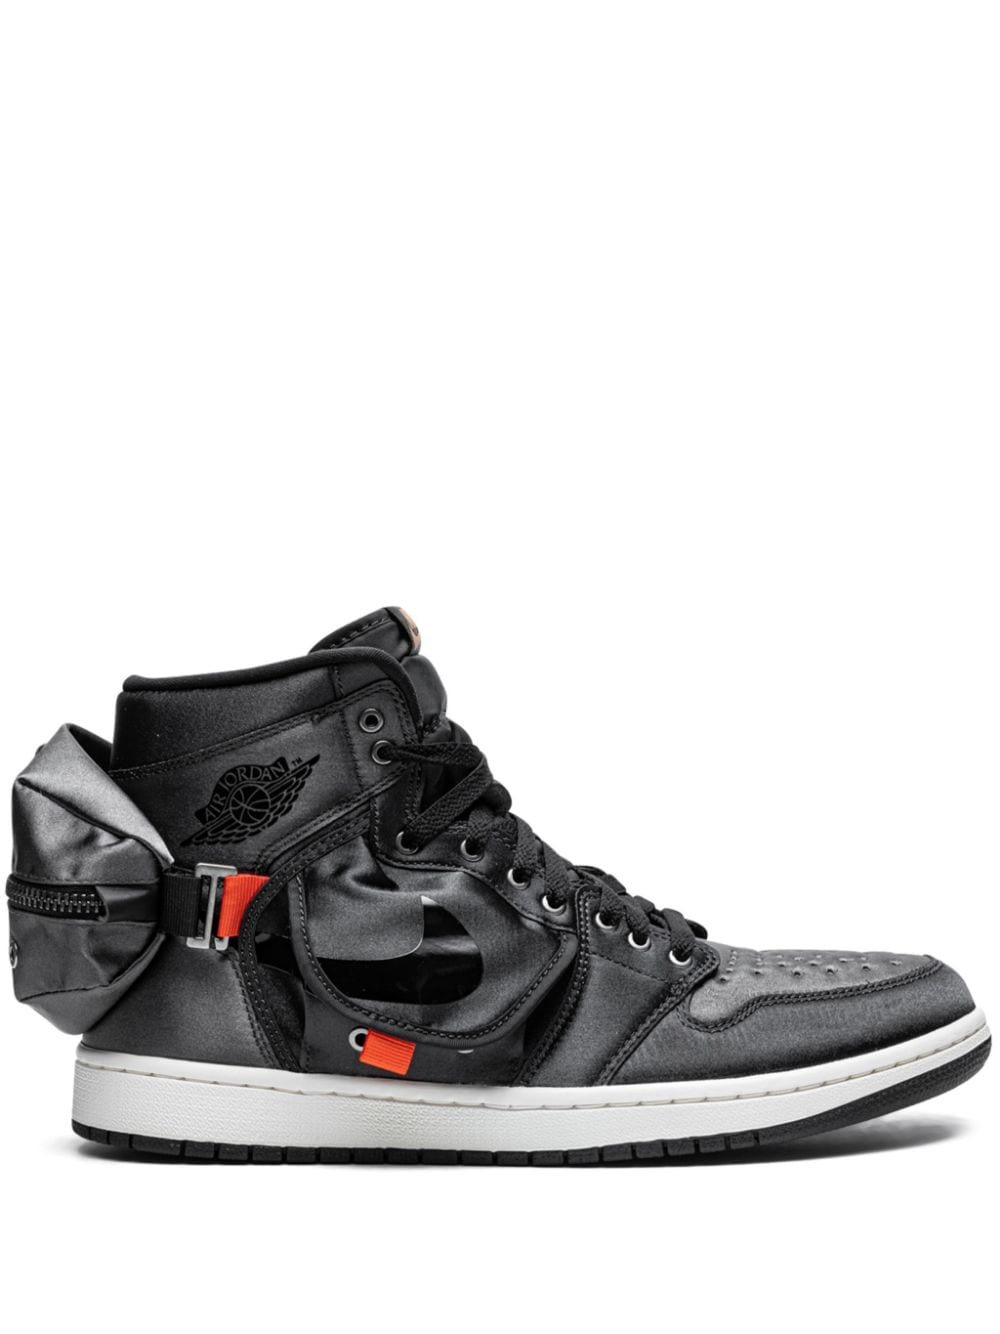 Jordan Air Jordan 1 High OG "Stash" sneakers - Black